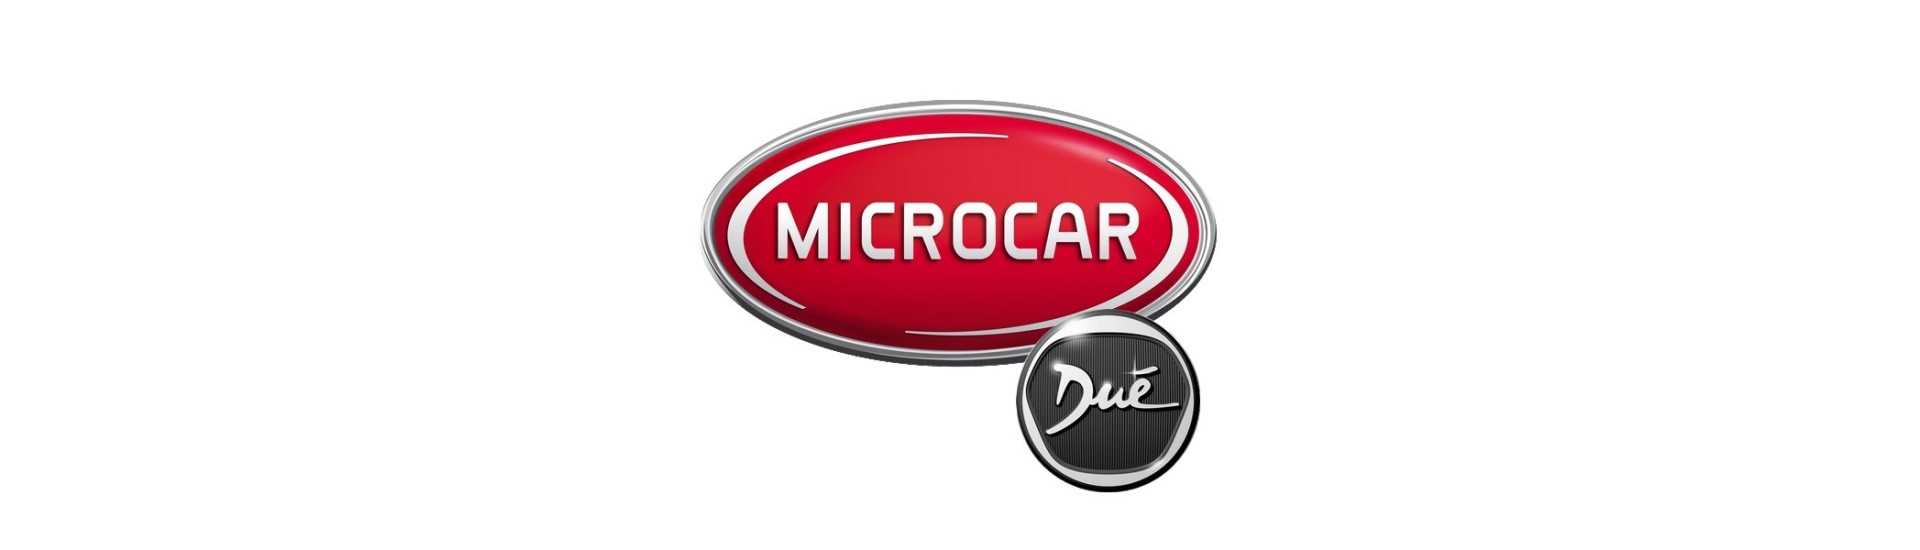 Heizblock zum besten Preis für Auto ohne Lizenz Microcar Dué